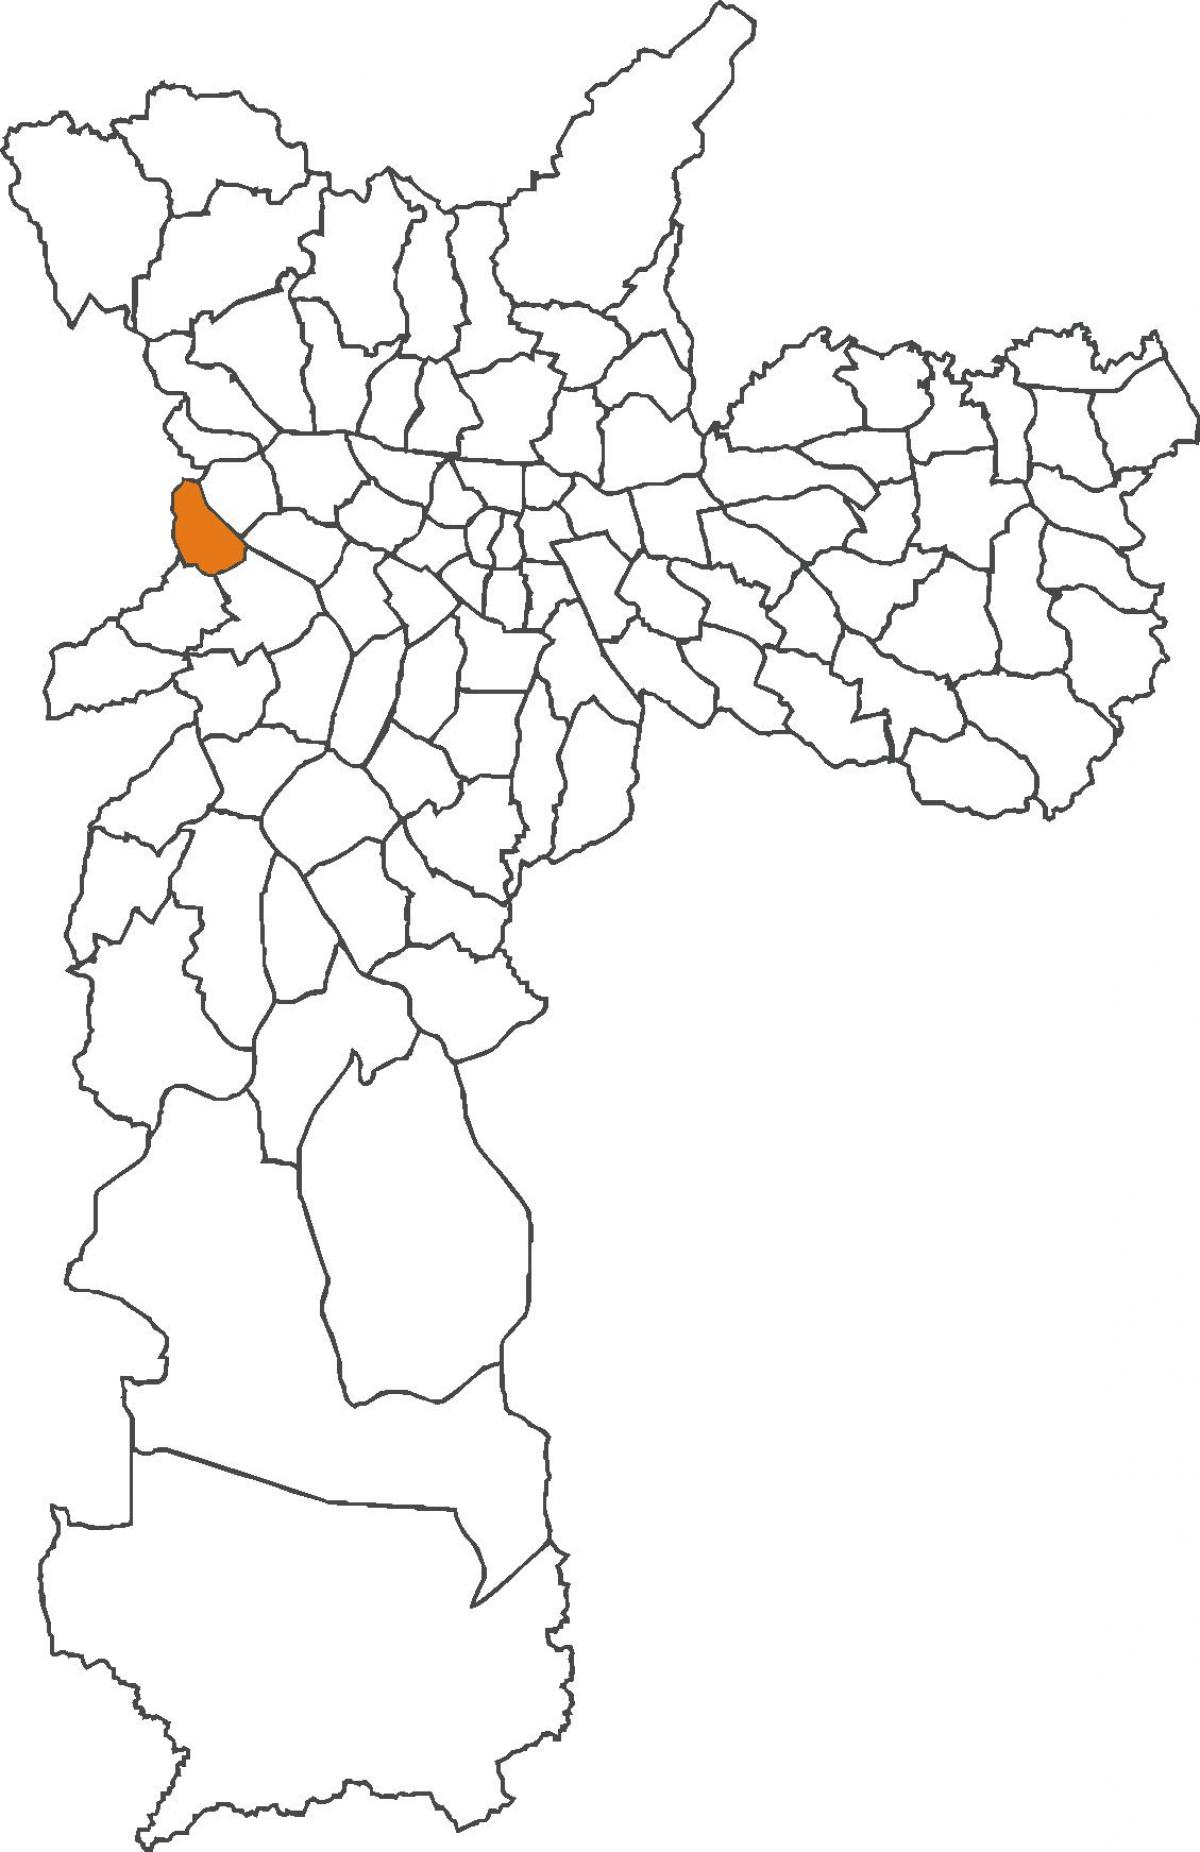 মানচিত্র Jaguaré জেলা